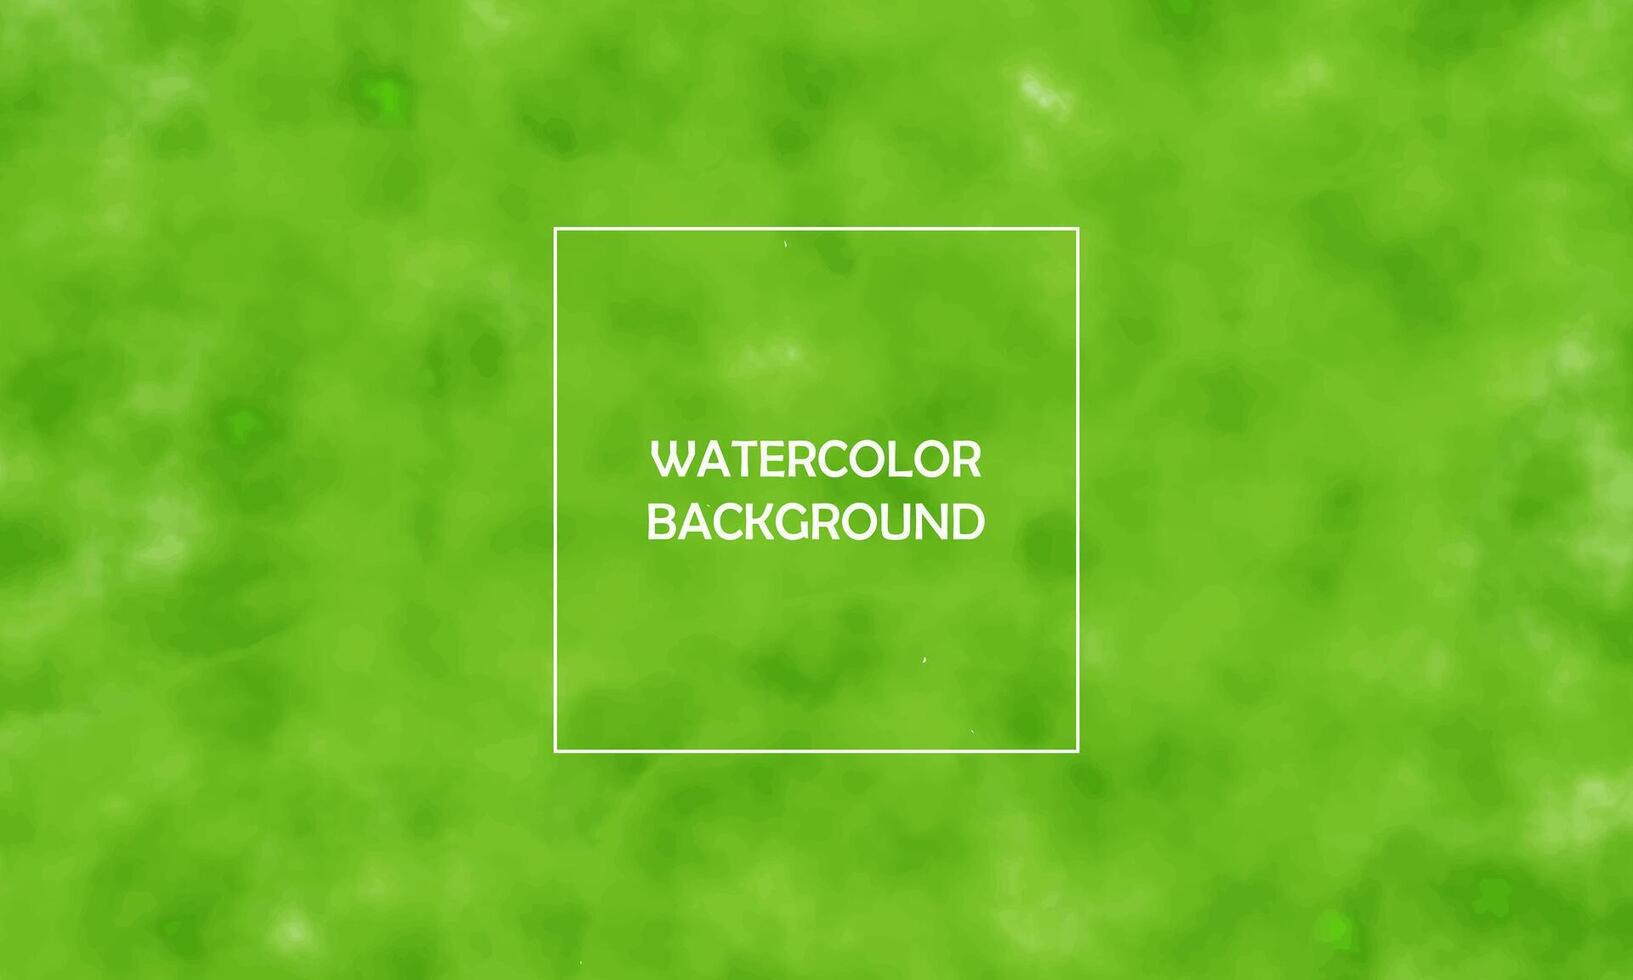 vattenfärg lutning maska fläck bakgrund med pastell, färgrik, skönhet Färg vektor